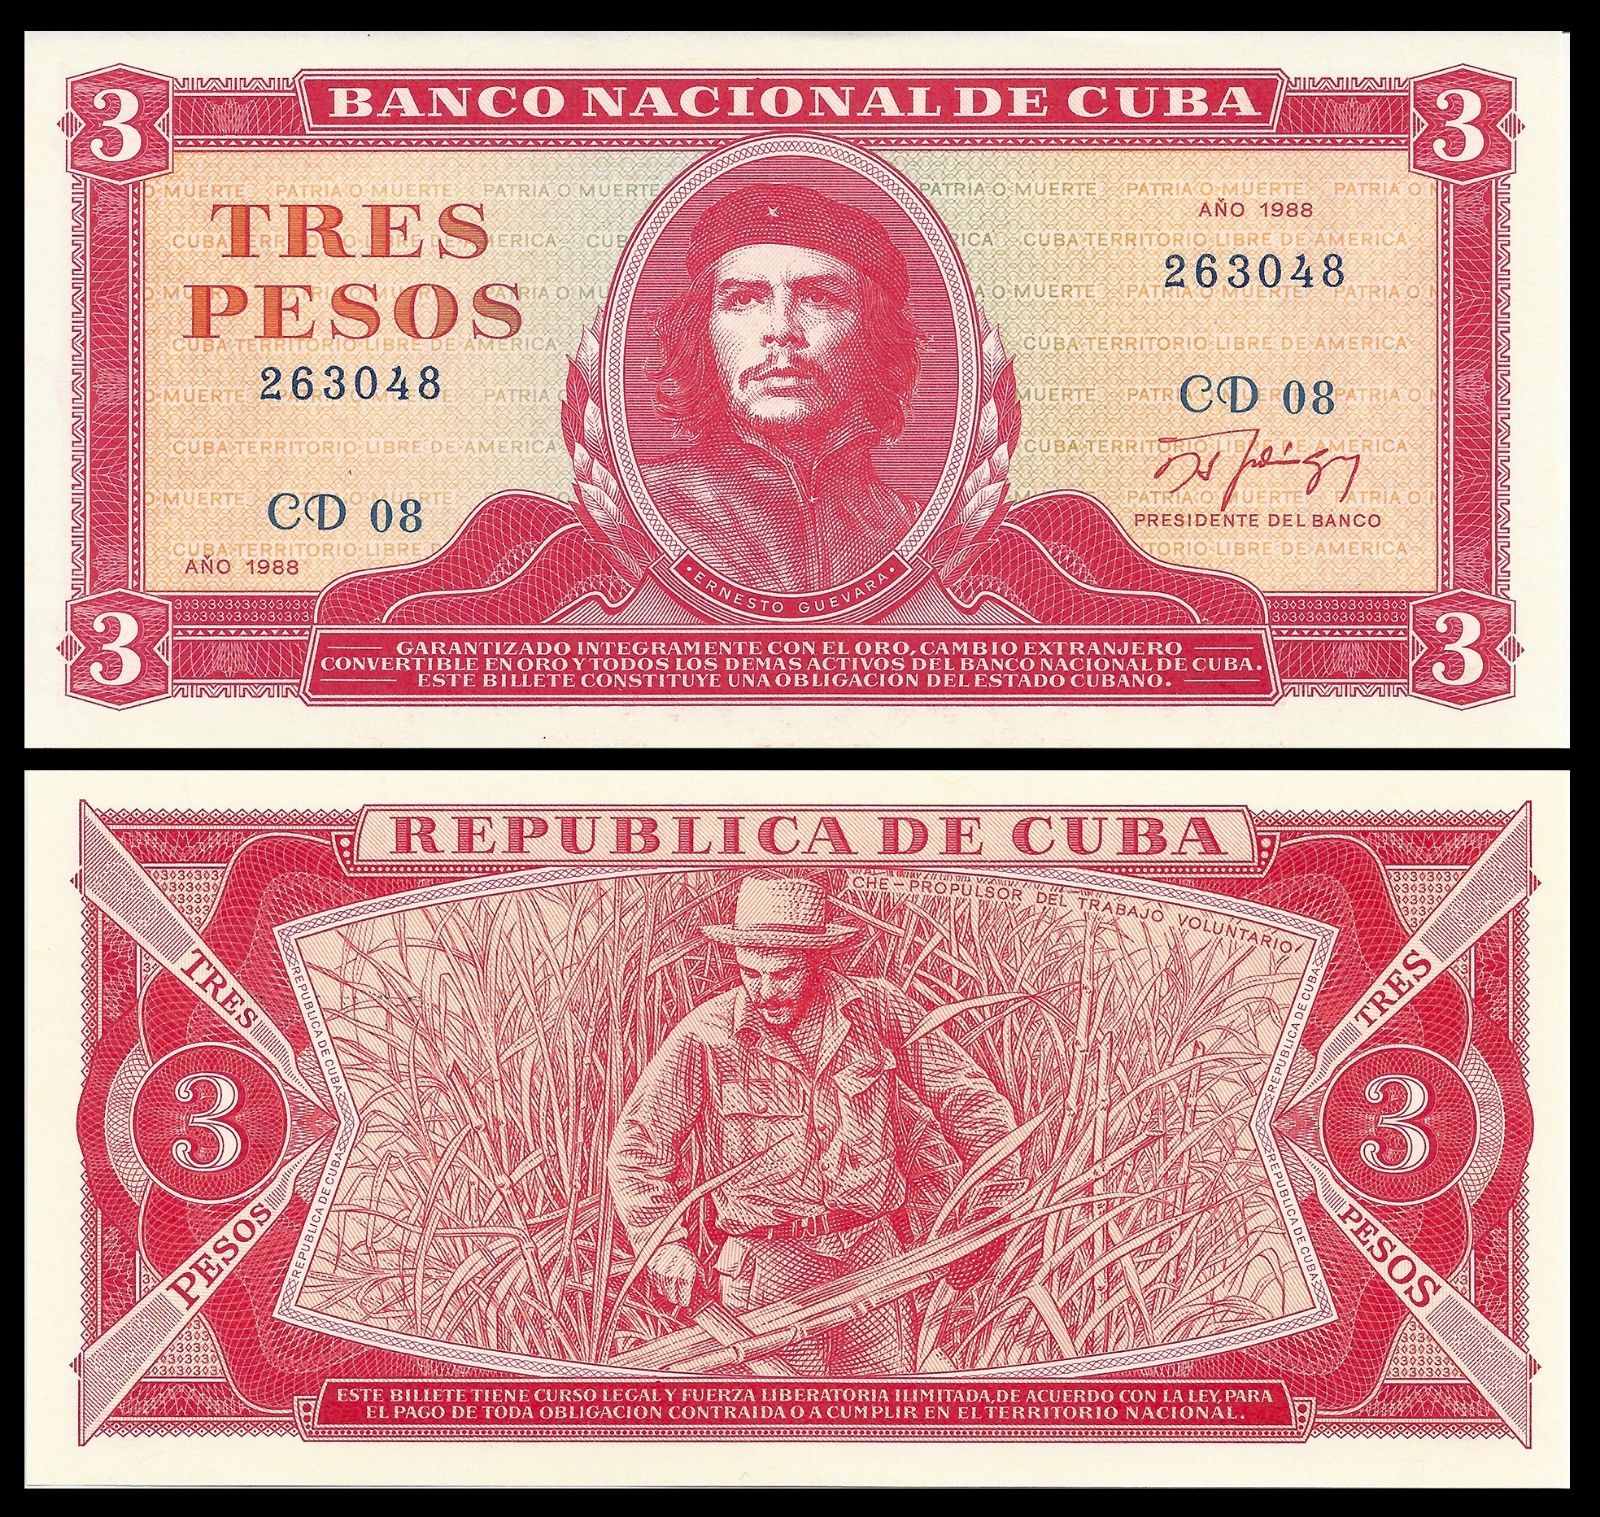 3 pesos Cuba 1988